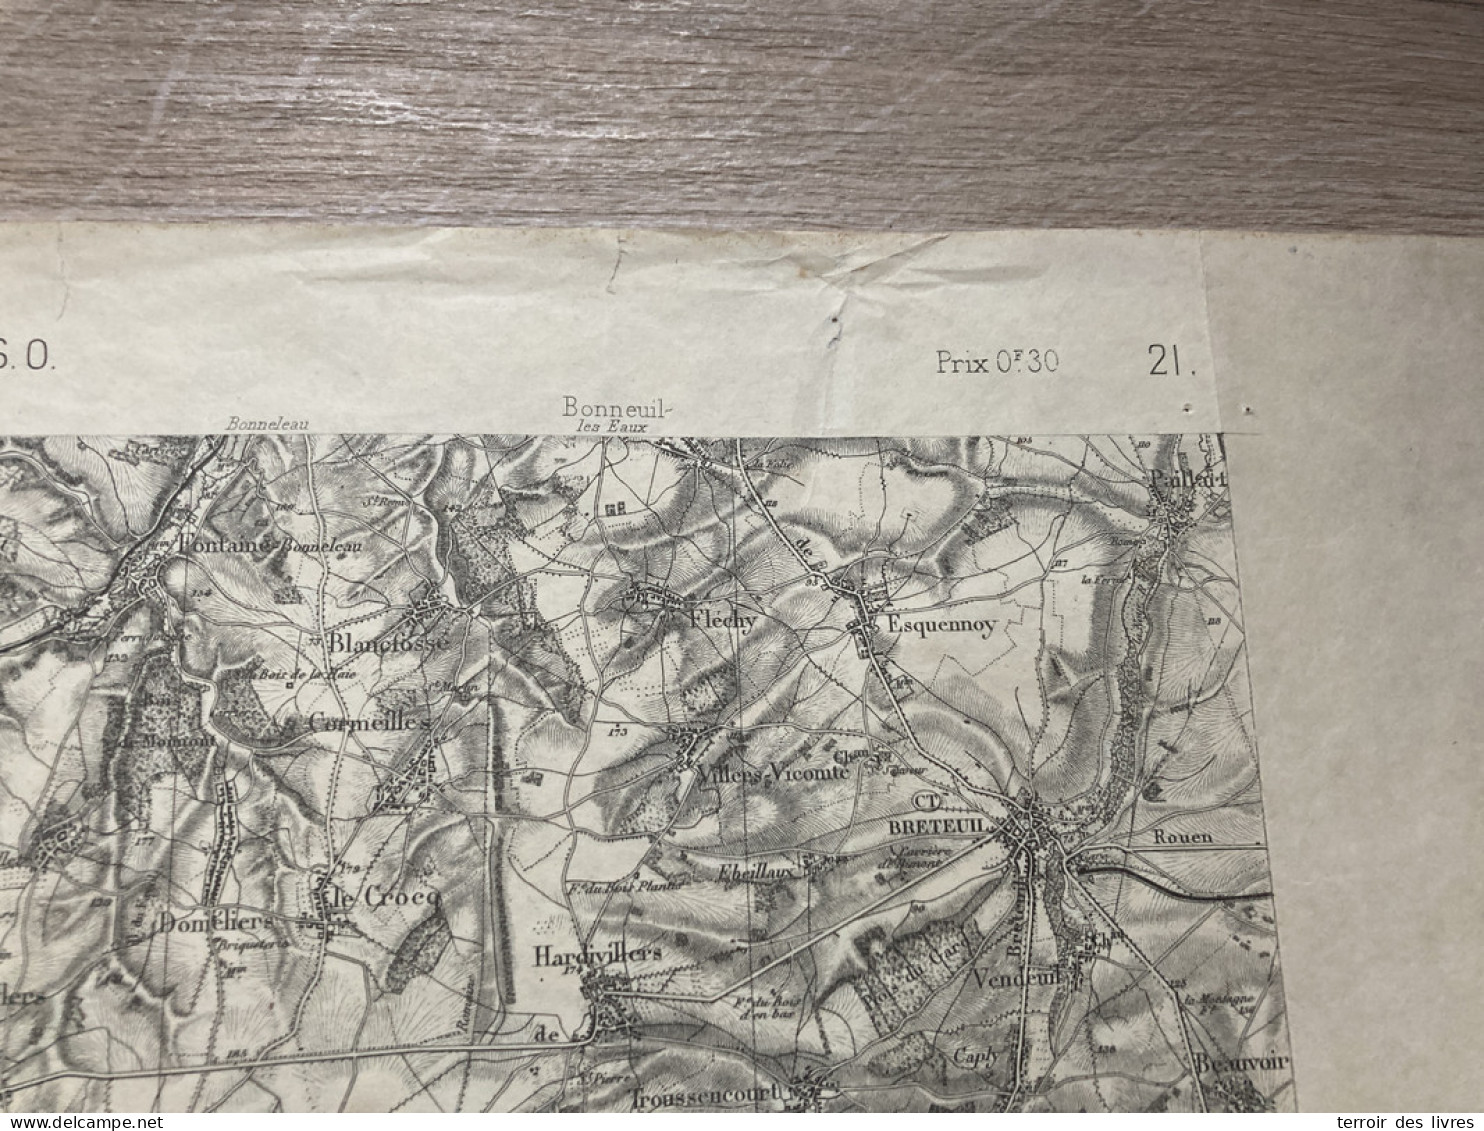 Carte état Major MONTDIDIER S.O. 1837 1890 35x54cm FRANCASTEL VIEFVILLERS OURCEL-MAISON AUCHY-LA-MONTAGNE PUITS-LA-VALLE - Cartes Géographiques